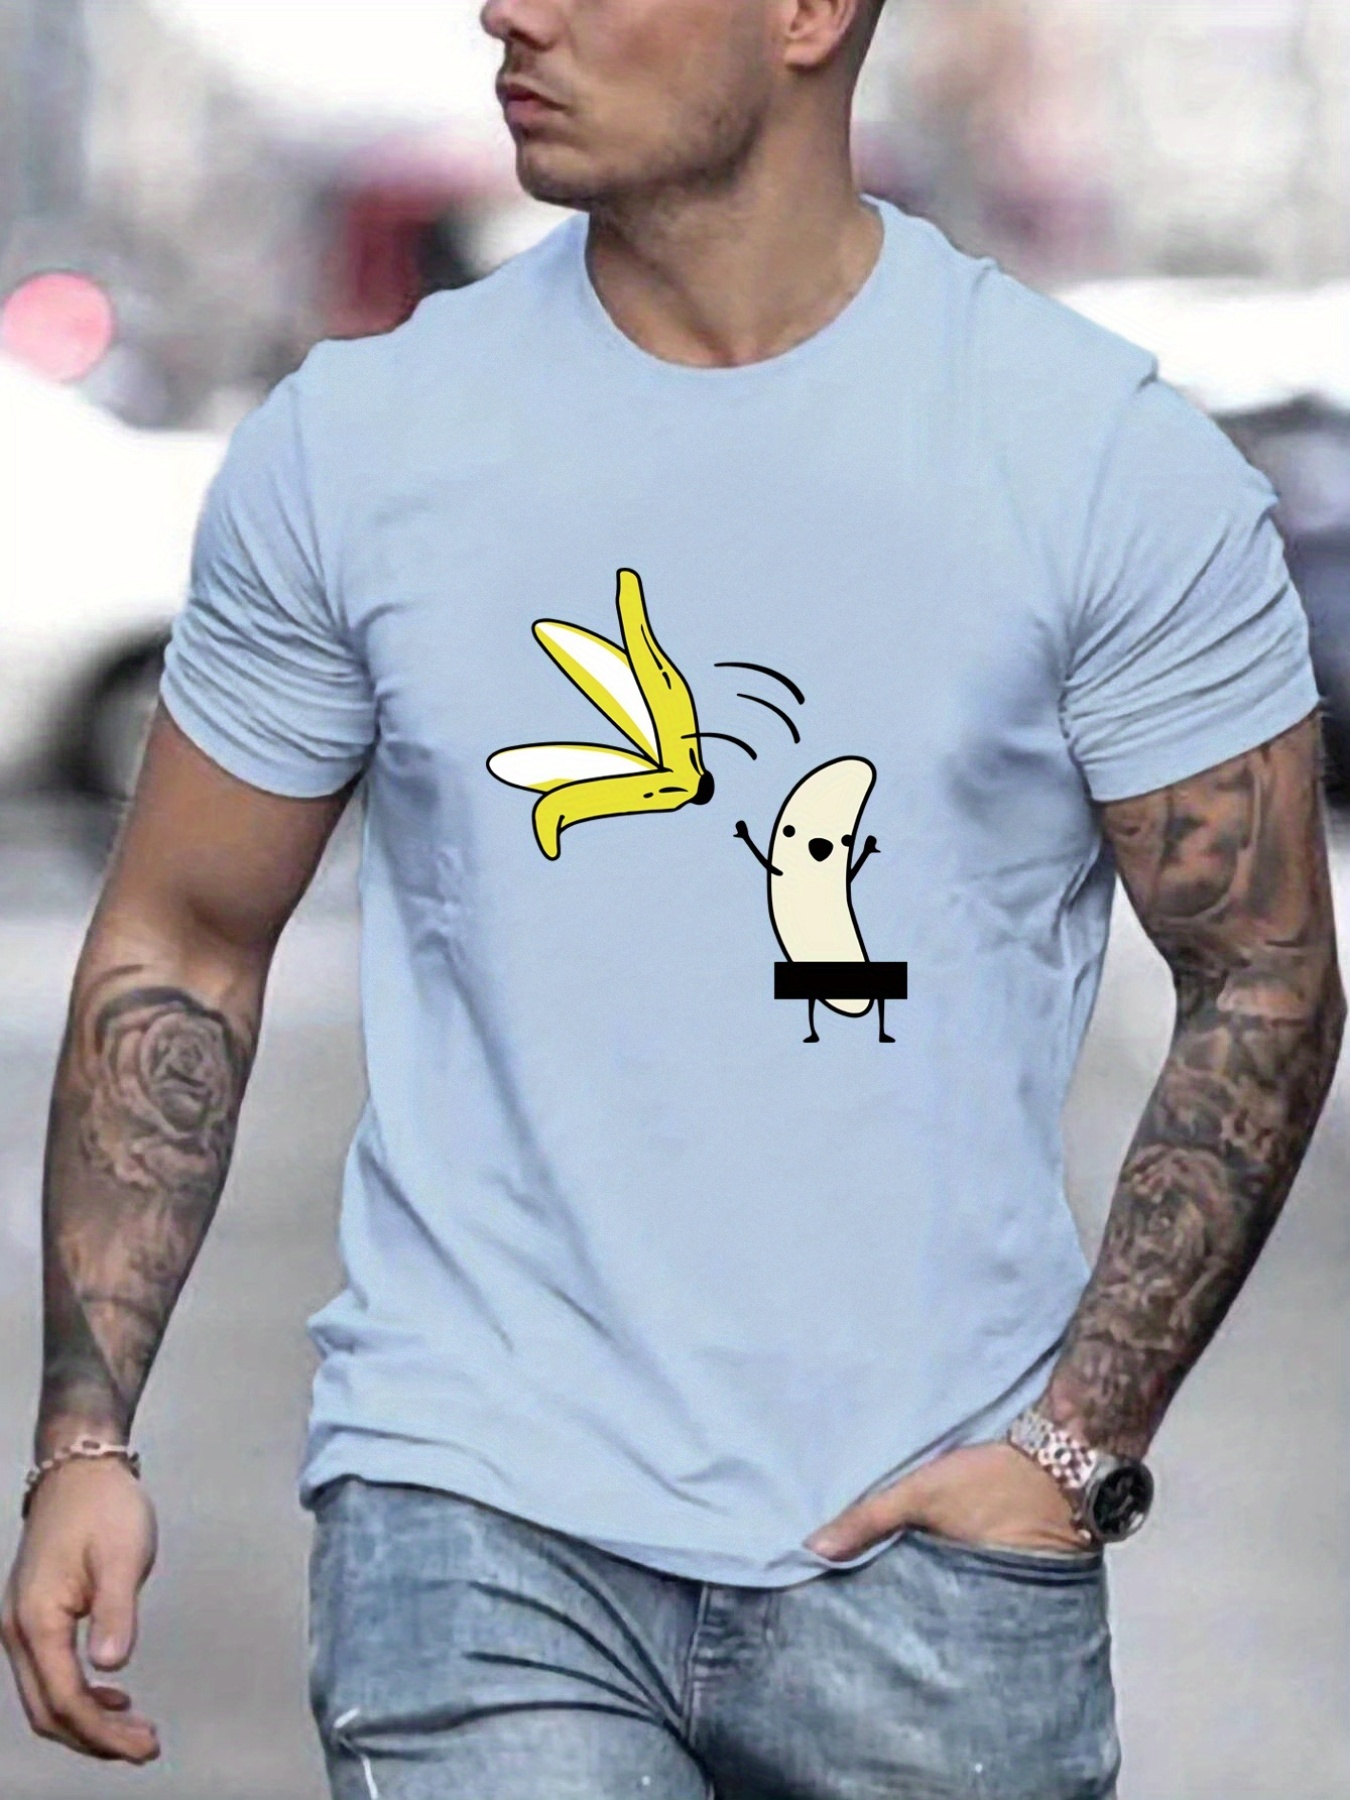 3d realista músculos no peito impresso t-shirts homens casual de fitness  manga curta algodão respirável